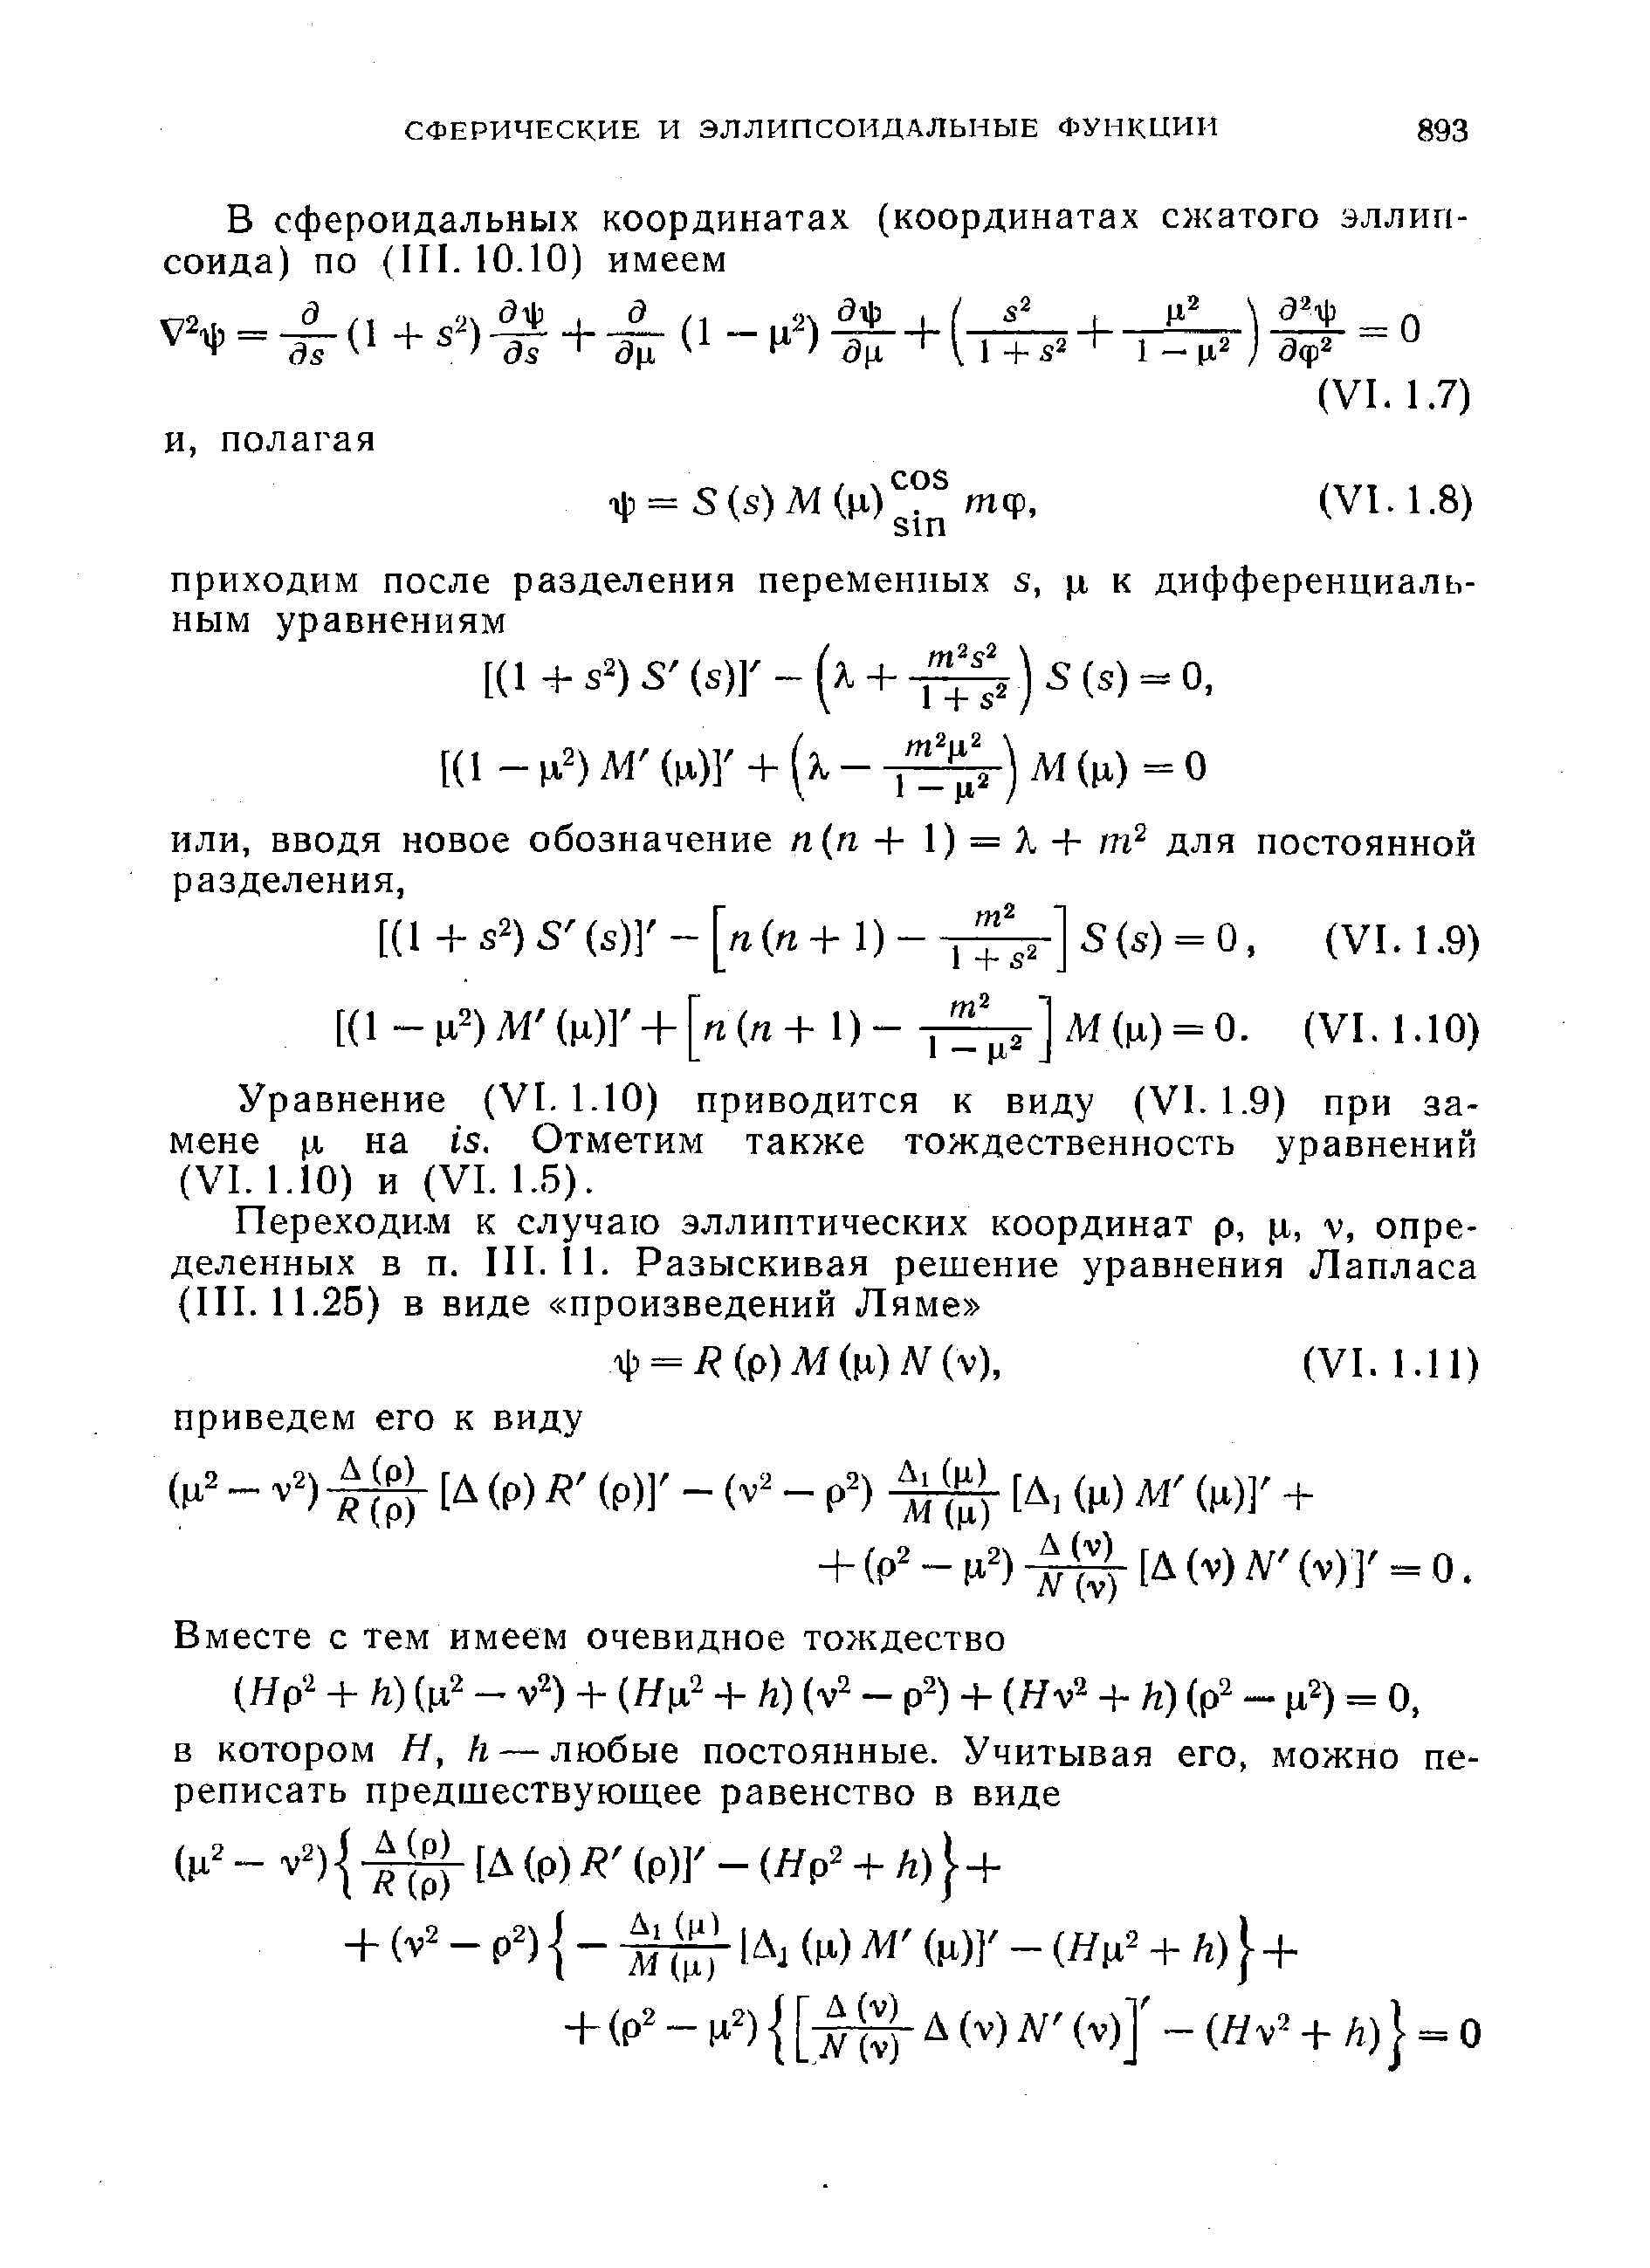 Уравнение (VI. 1.10) приводится к виду (VI. 1.9) при замене л на is. Отметим также тождественность уравнений (VI. 1.10) и (VI. 1.5).
